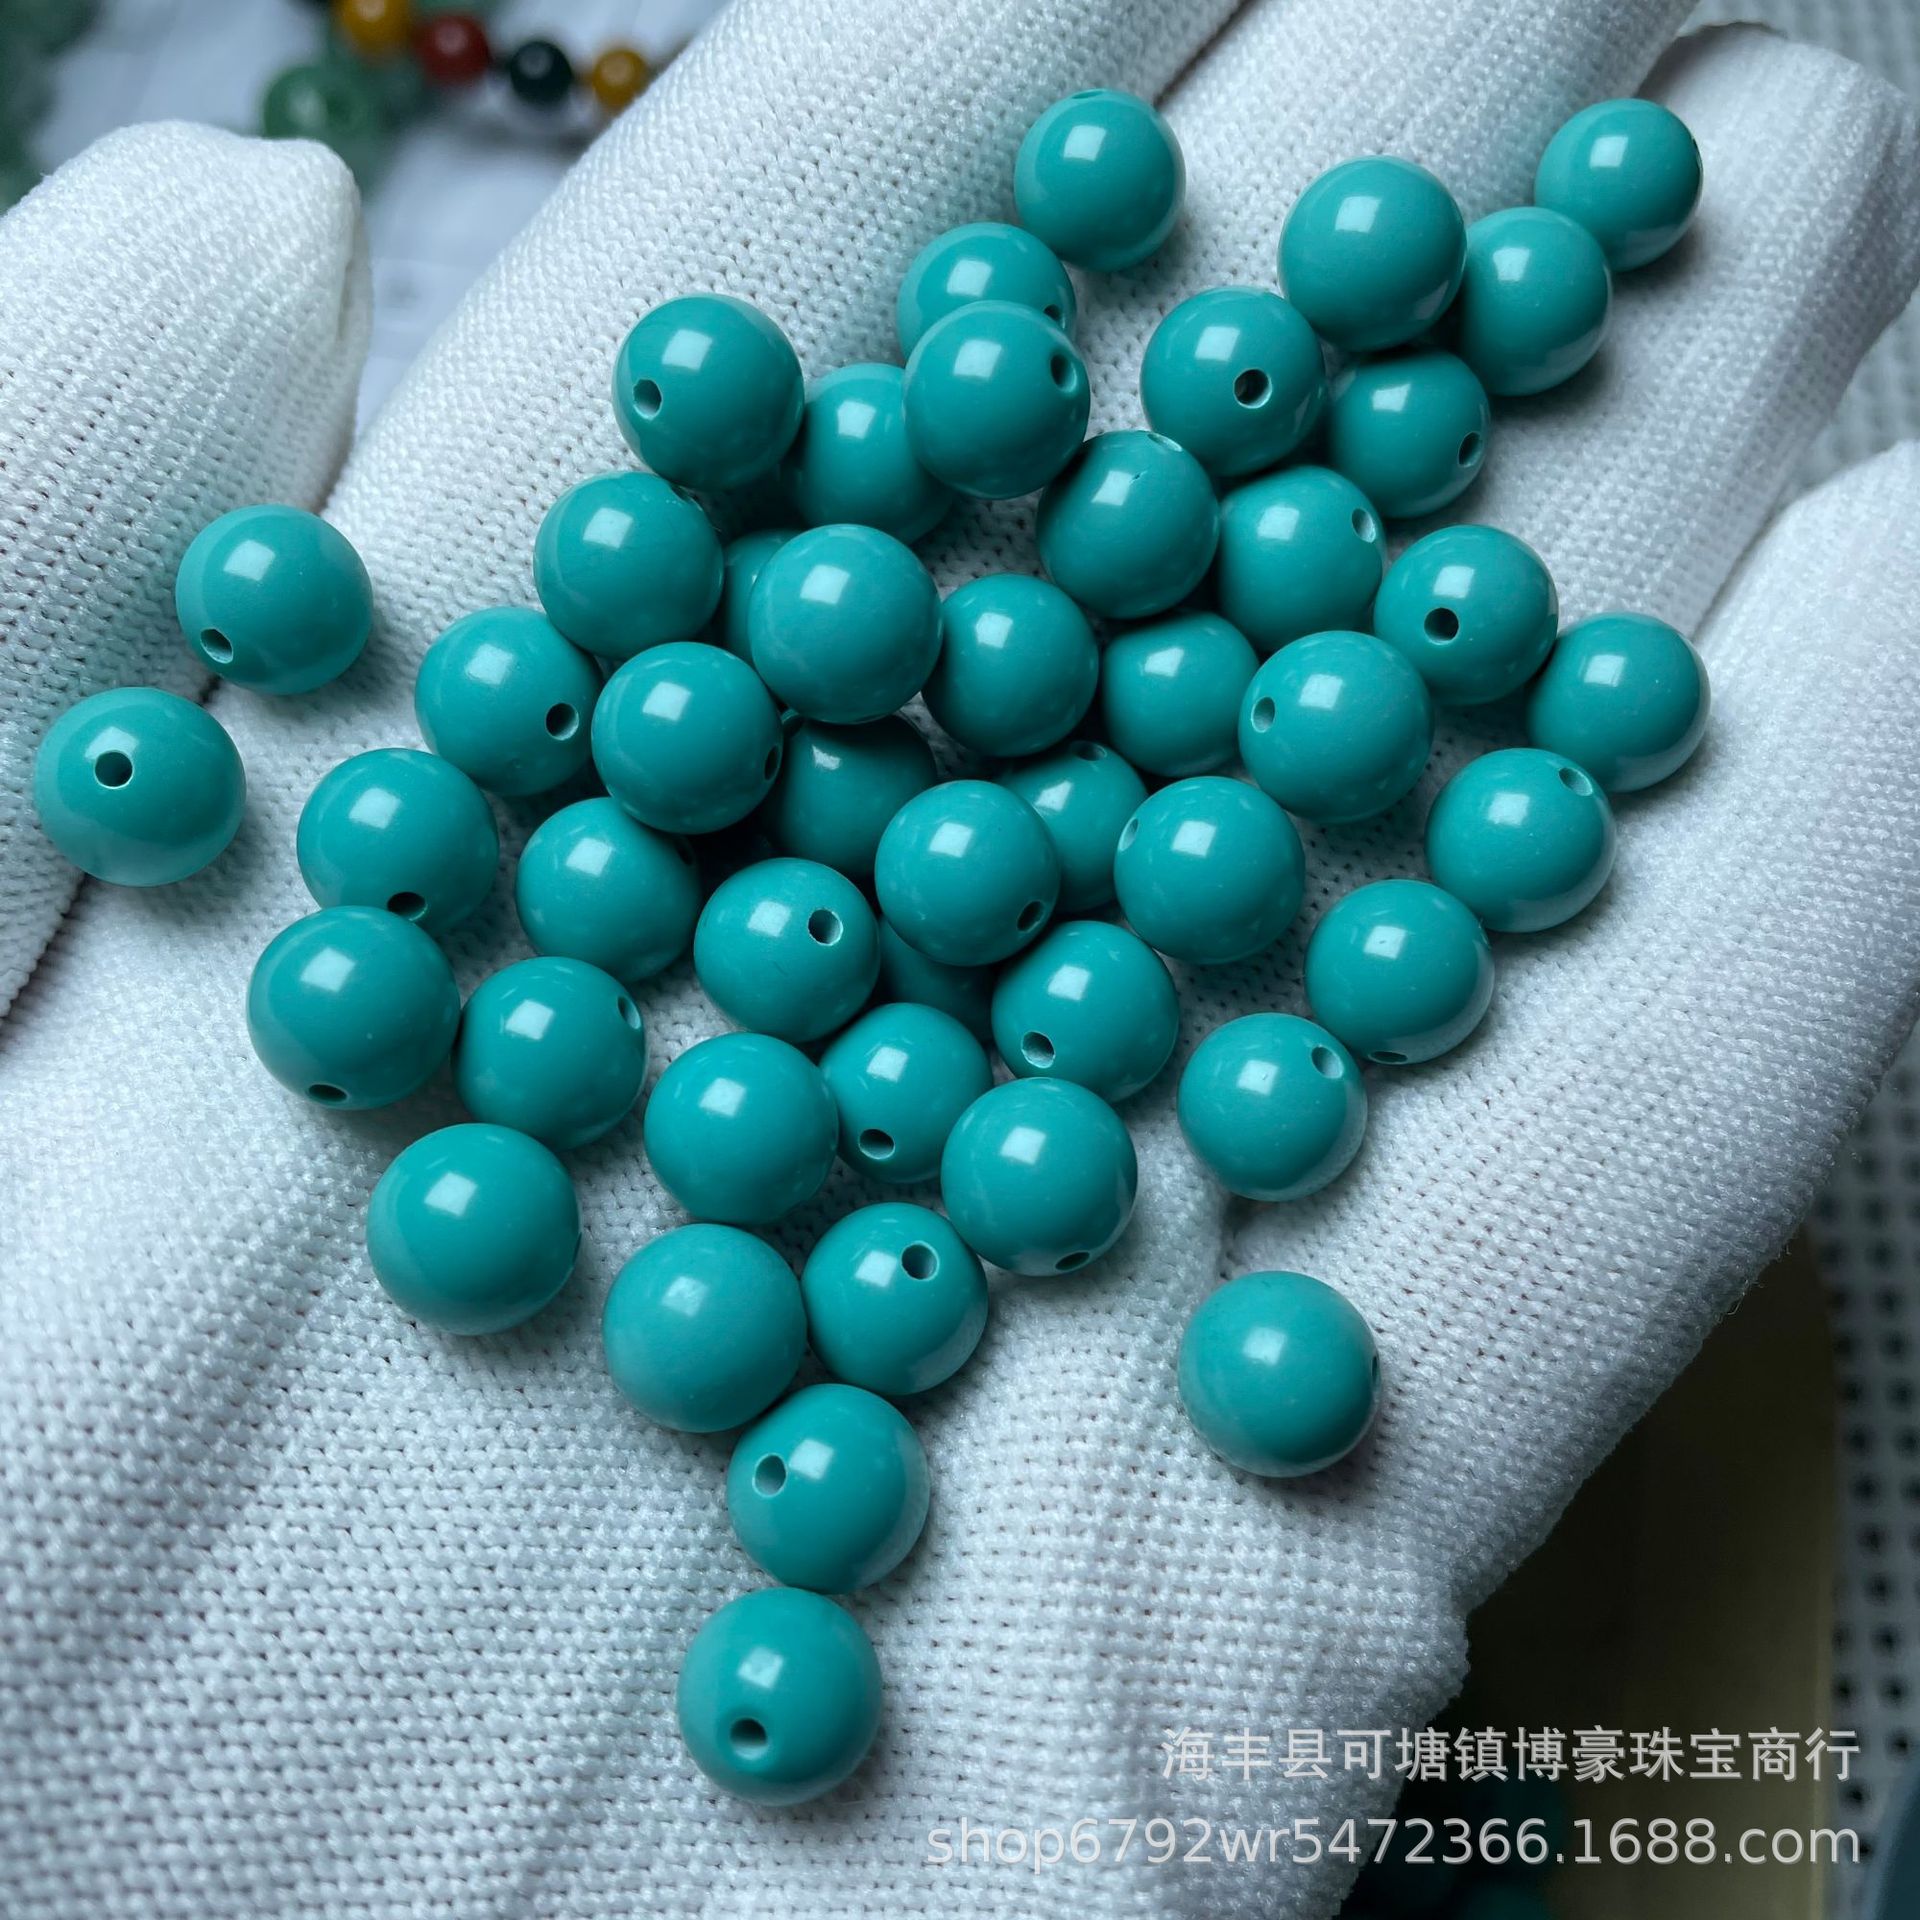 菱镁矿绿松石高瓷圆珠老型珠一体三通蓝绿单珠散珠配饰厂家批发